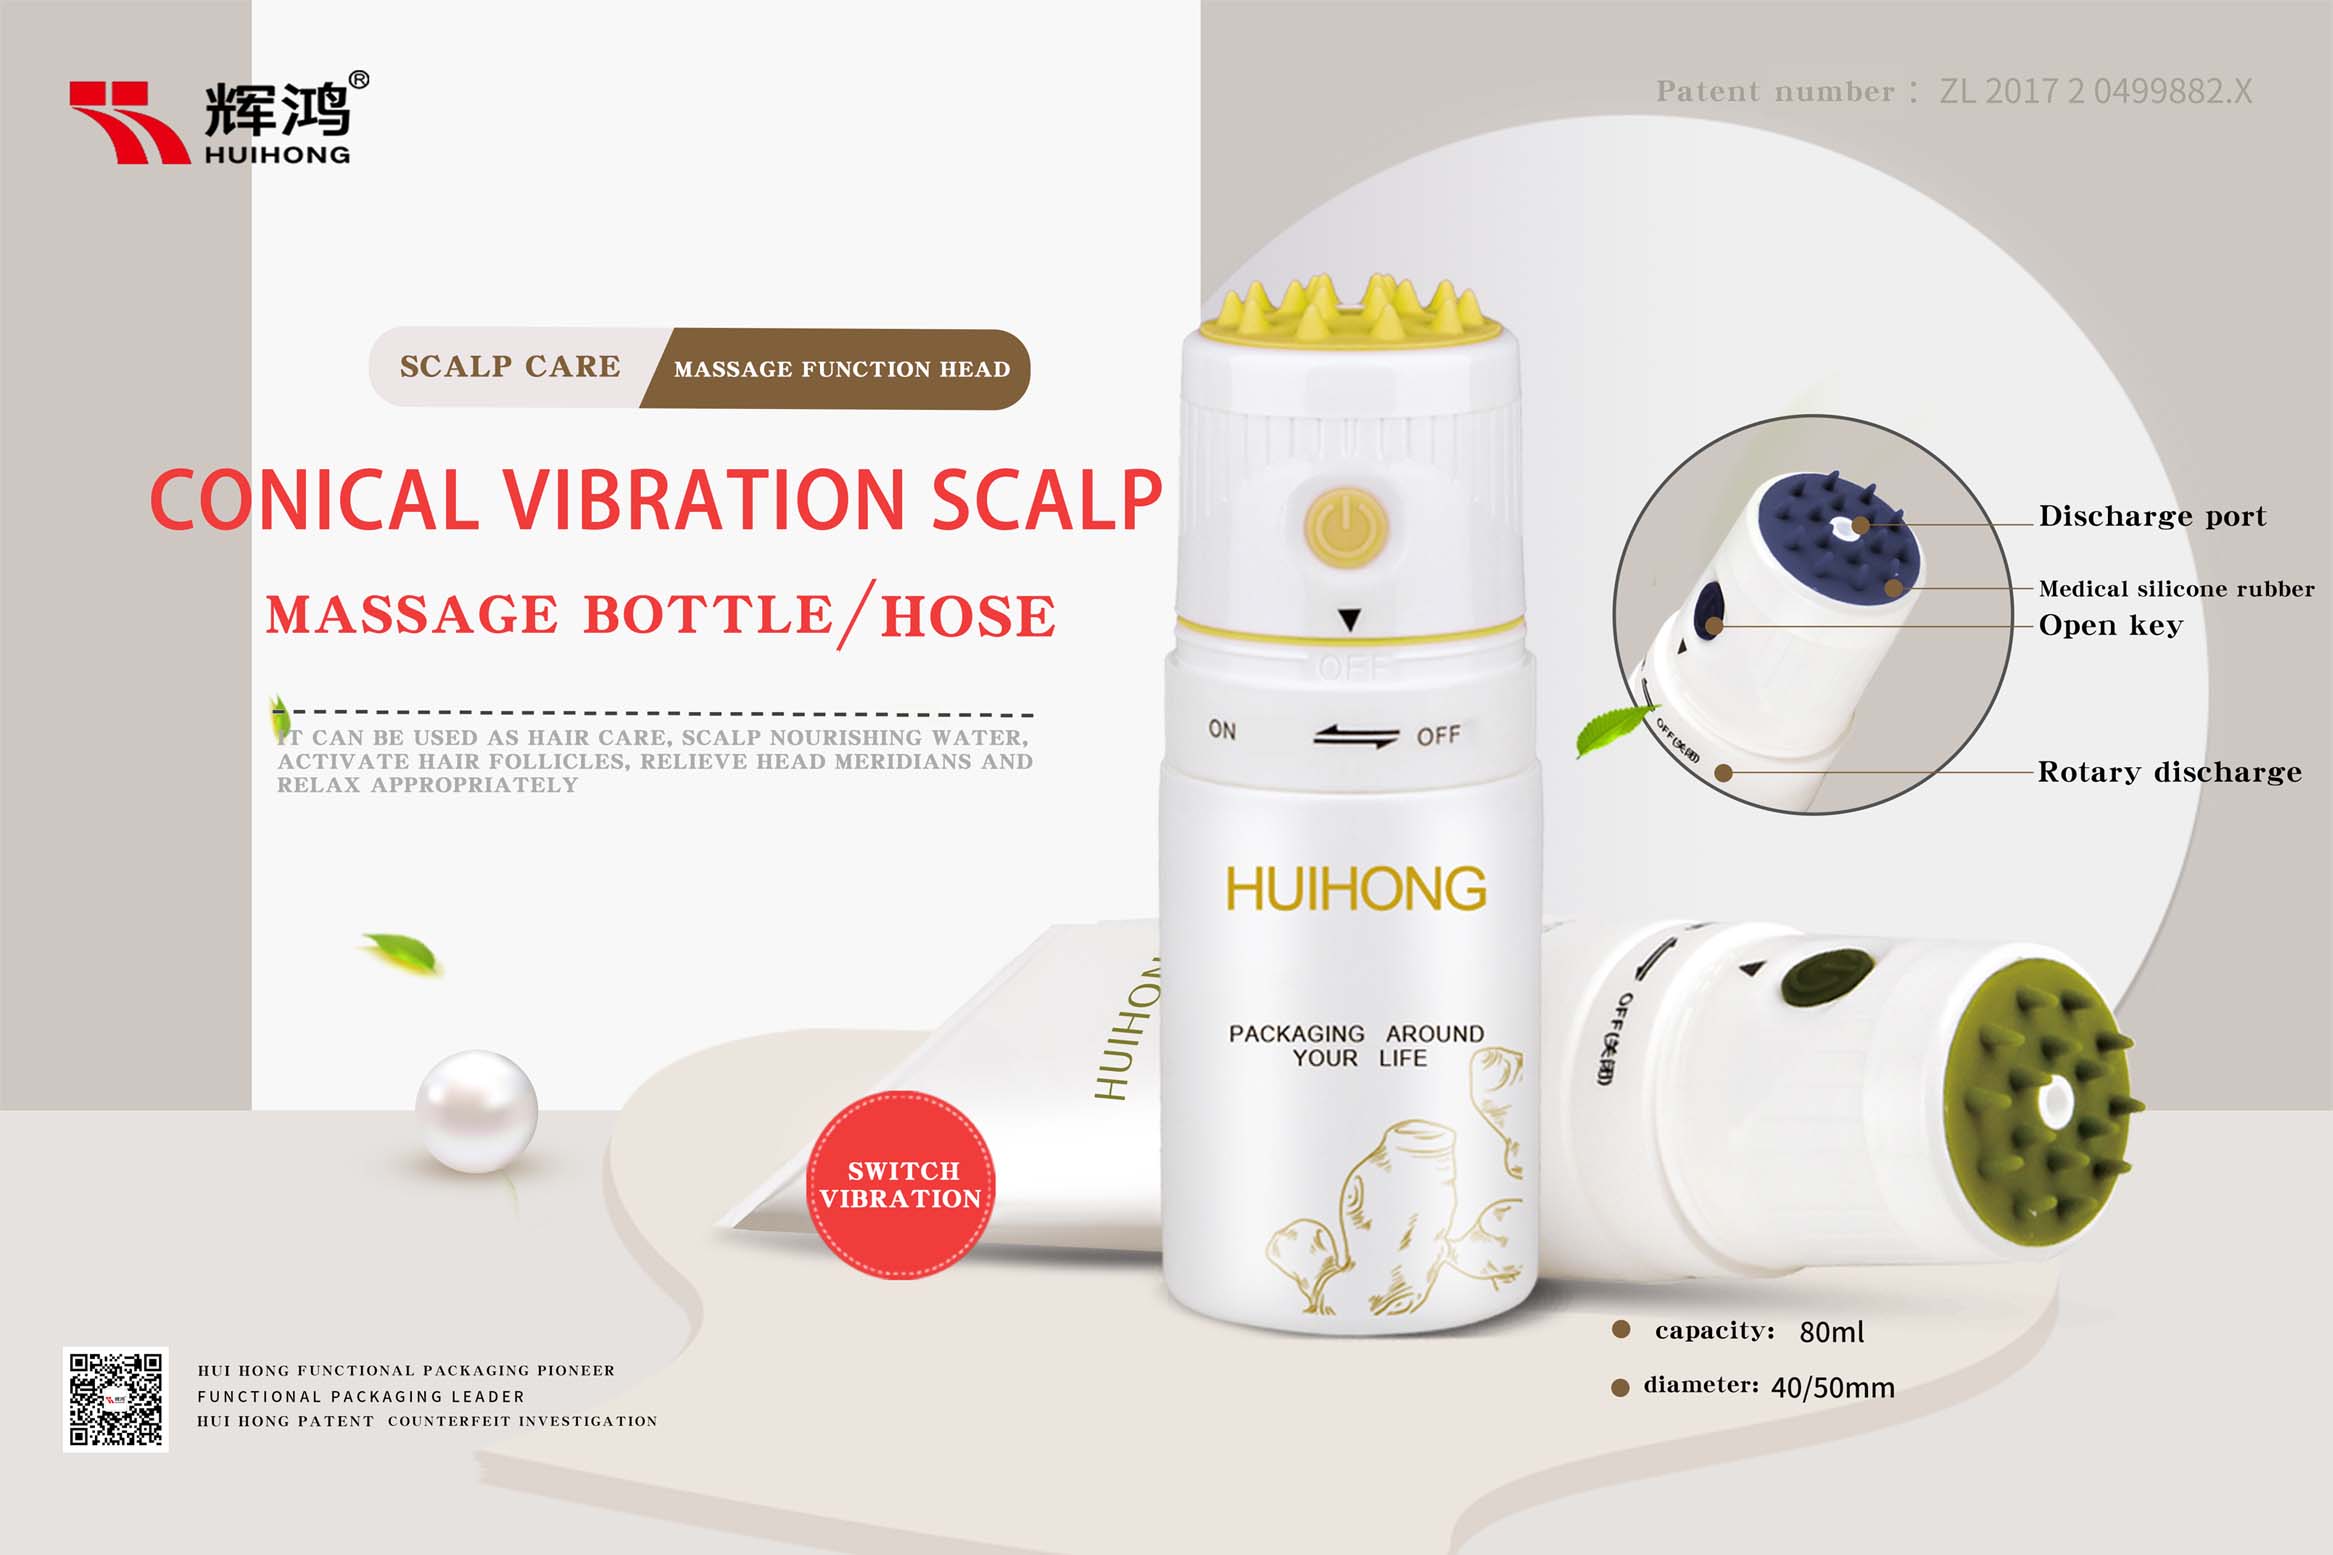 инновационная запатентованная коническая вибрационная массажная система для кожи головы
